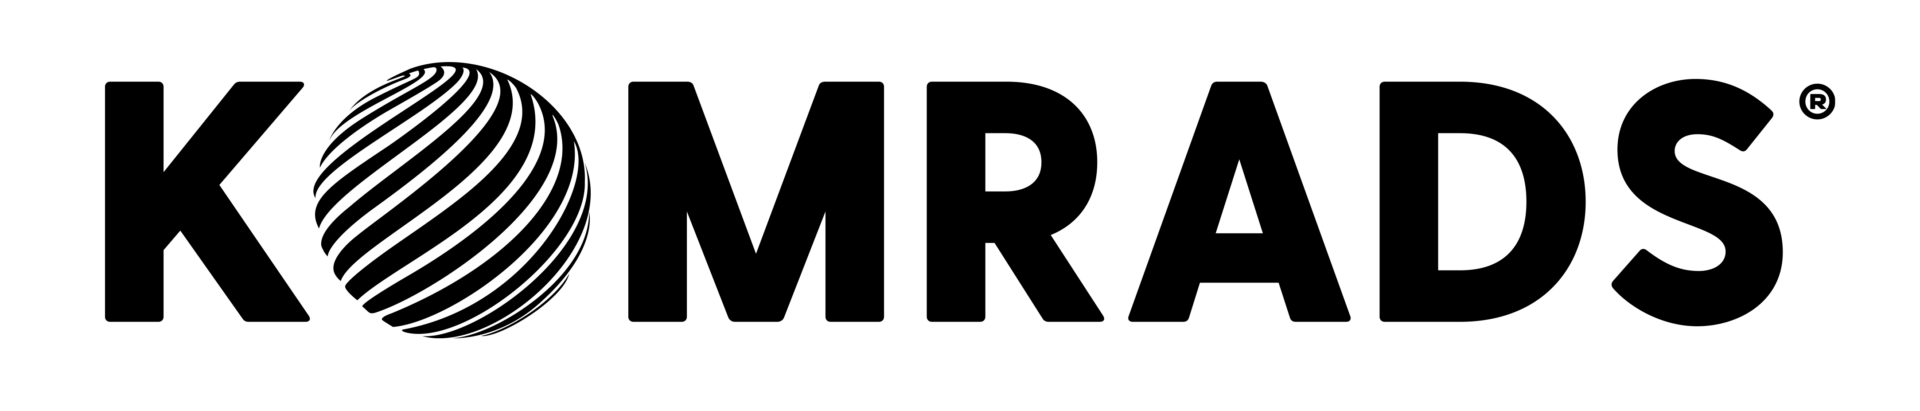 Komrads Logo